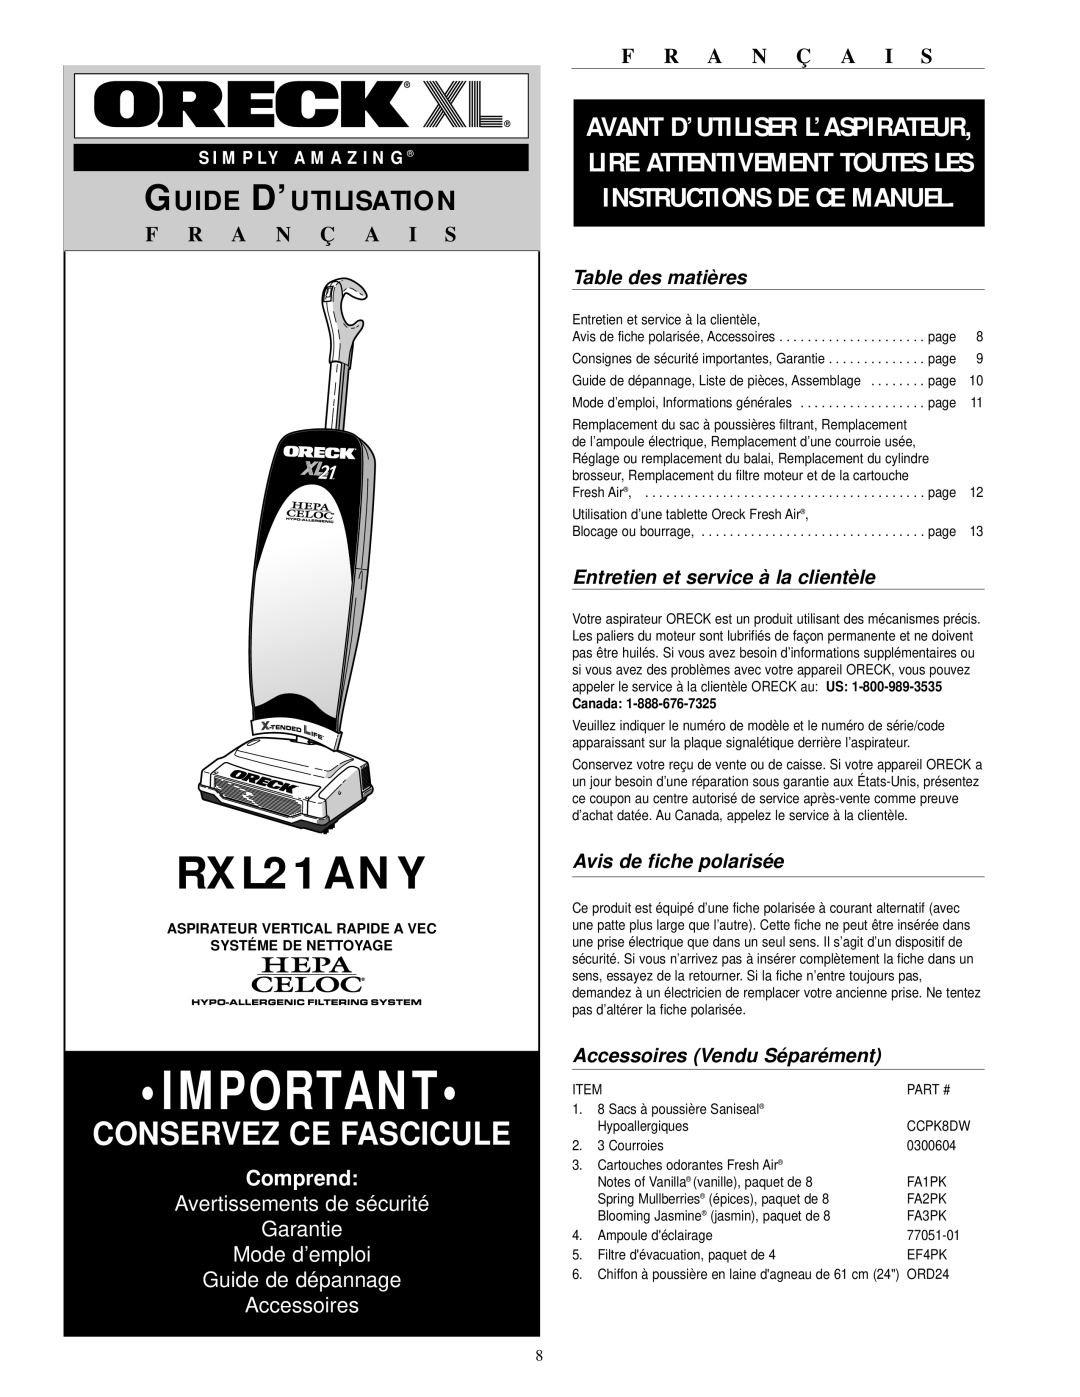 Oreck RXL21ANY Conservez Ce Fascicule, Guide D’Utilisation, F R A N Ç A I S, Comprend, Guide de dépannage Accessoires 